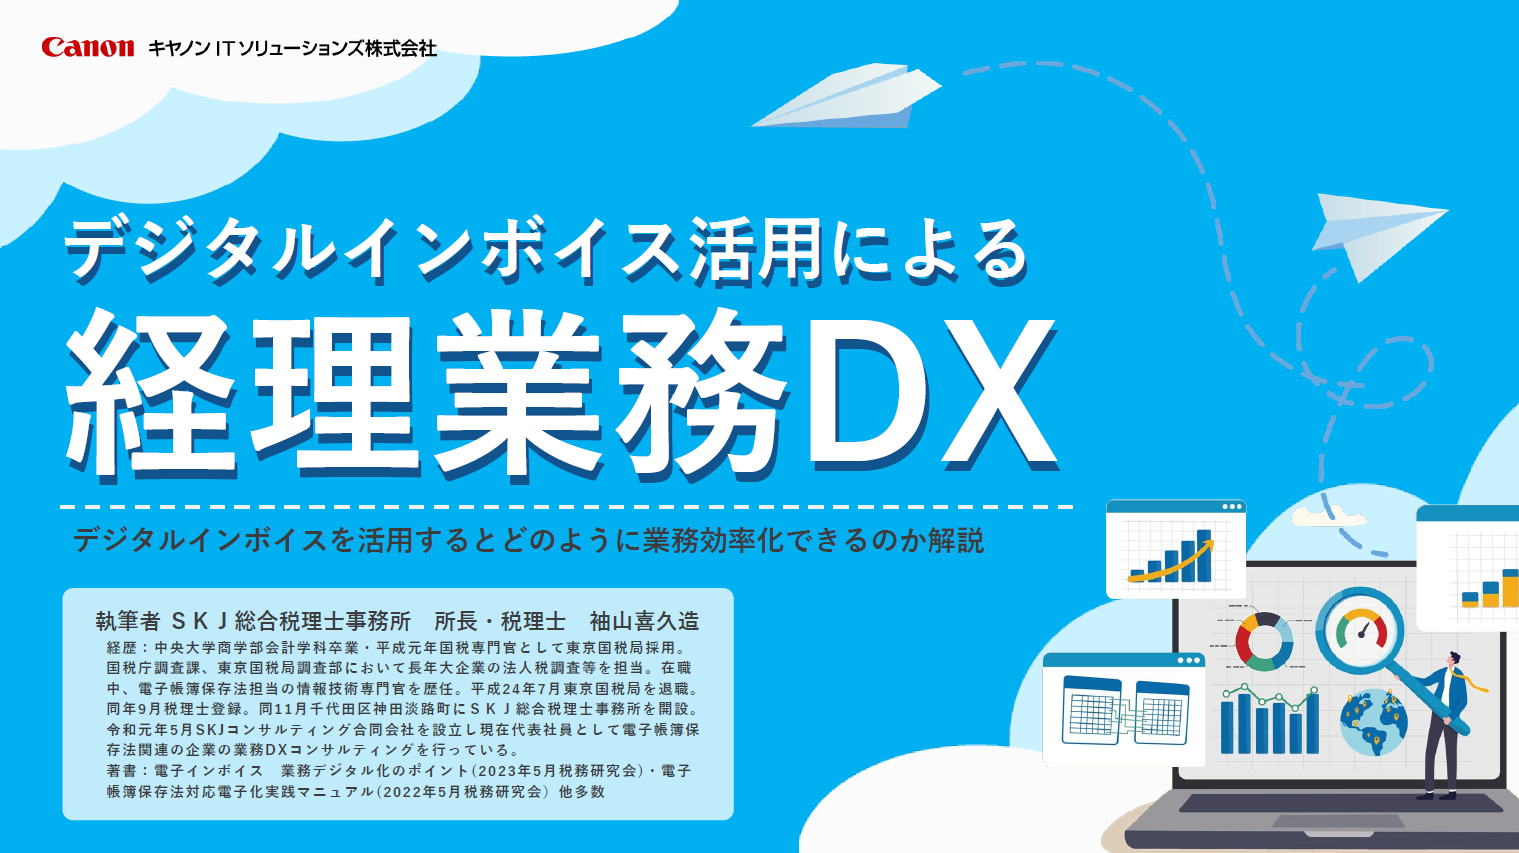 デジタルインボイス活用による経理業務DX